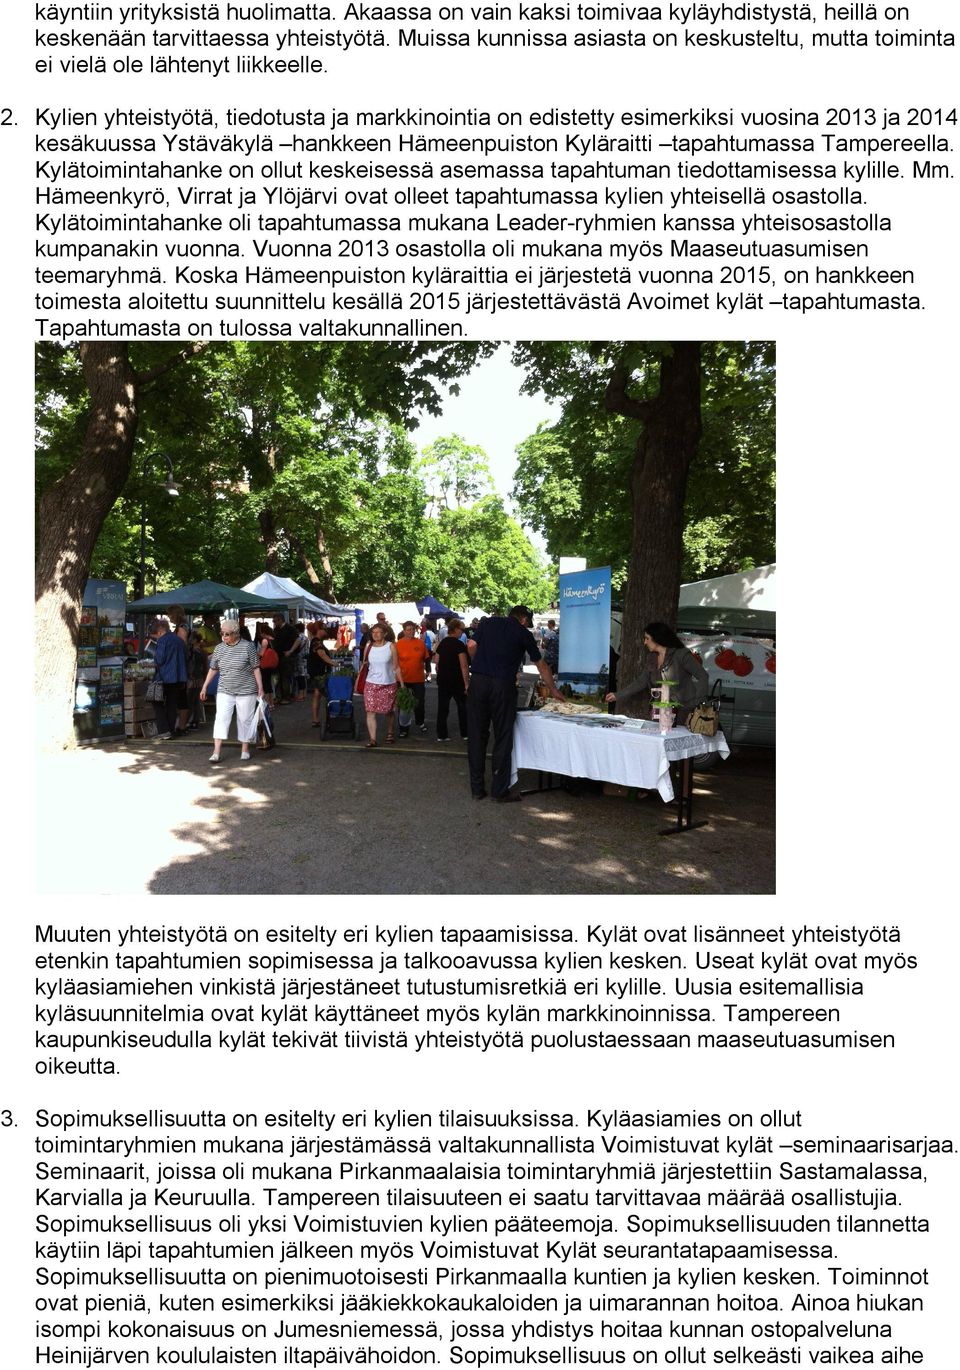 Kylien yhteistyötä, tiedotusta ja markkinointia on edistetty esimerkiksi vuosina 2013 ja 2014 kesäkuussa Ystäväkylä hankkeen Hämeenpuiston Kyläraitti tapahtumassa Tampereella.